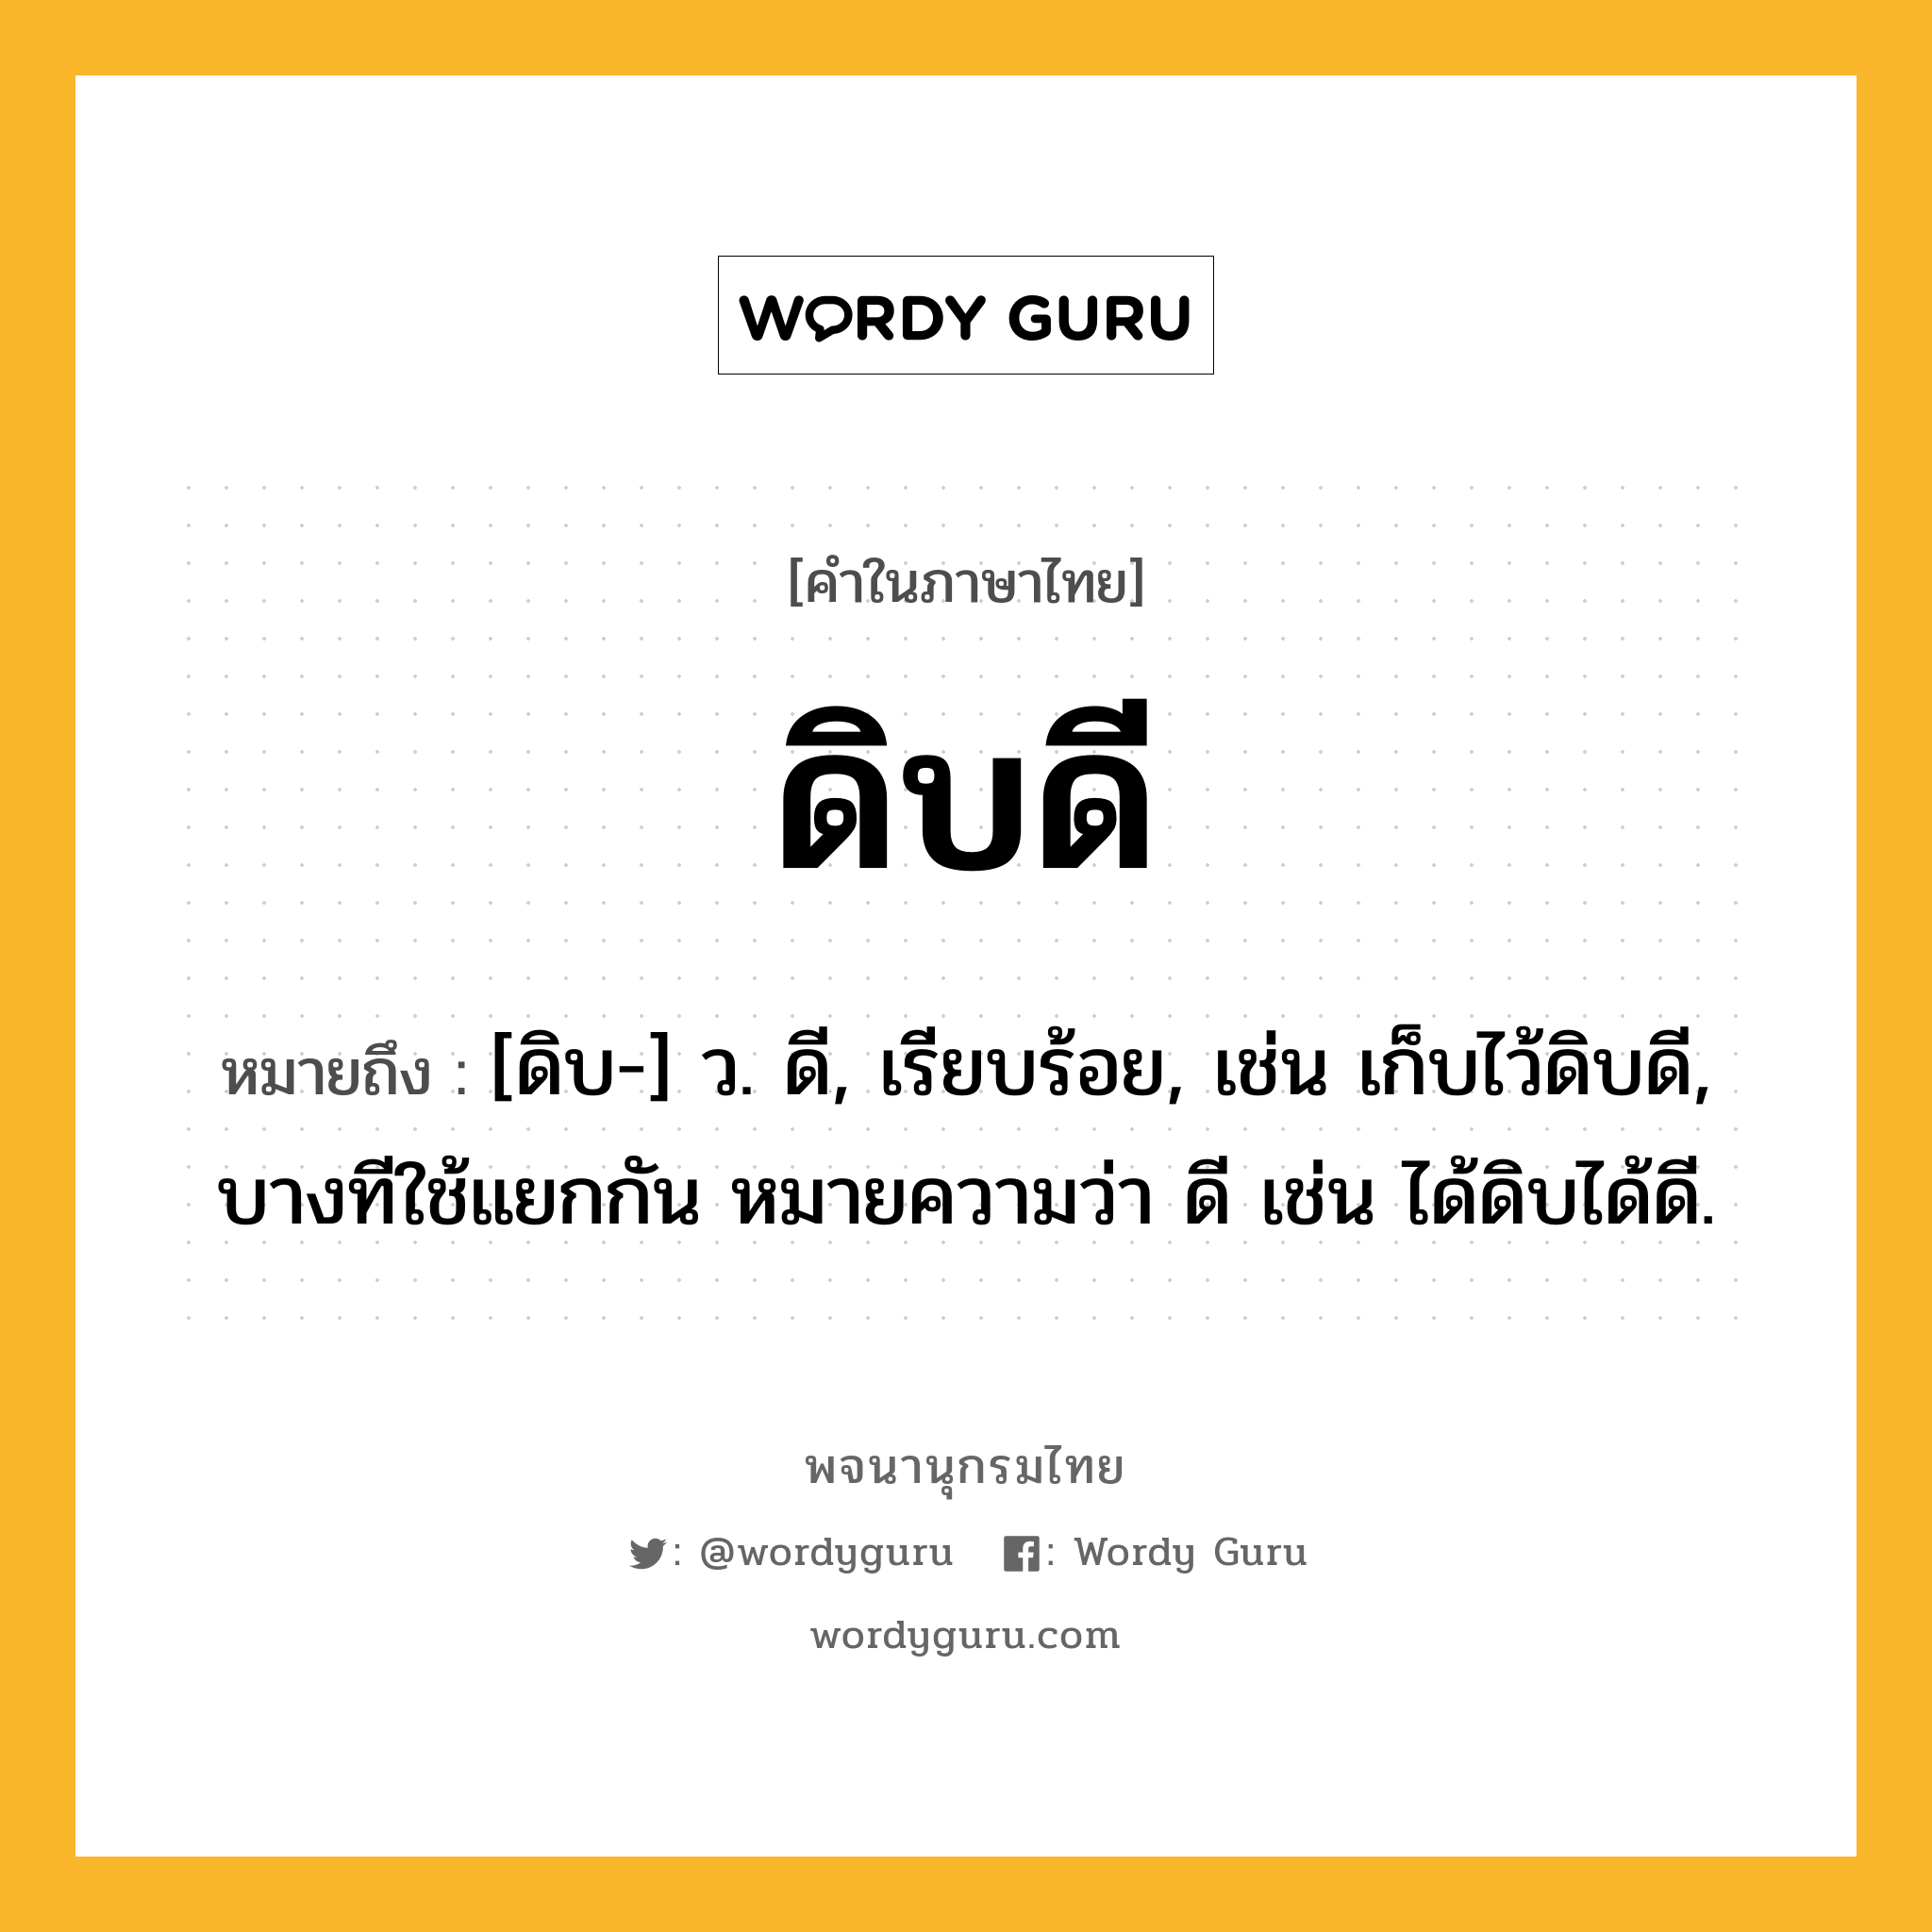 ดิบดี ความหมาย หมายถึงอะไร?, คำในภาษาไทย ดิบดี หมายถึง [ดิบ-] ว. ดี, เรียบร้อย, เช่น เก็บไว้ดิบดี, บางทีใช้แยกกัน หมายความว่า ดี เช่น ได้ดิบได้ดี.